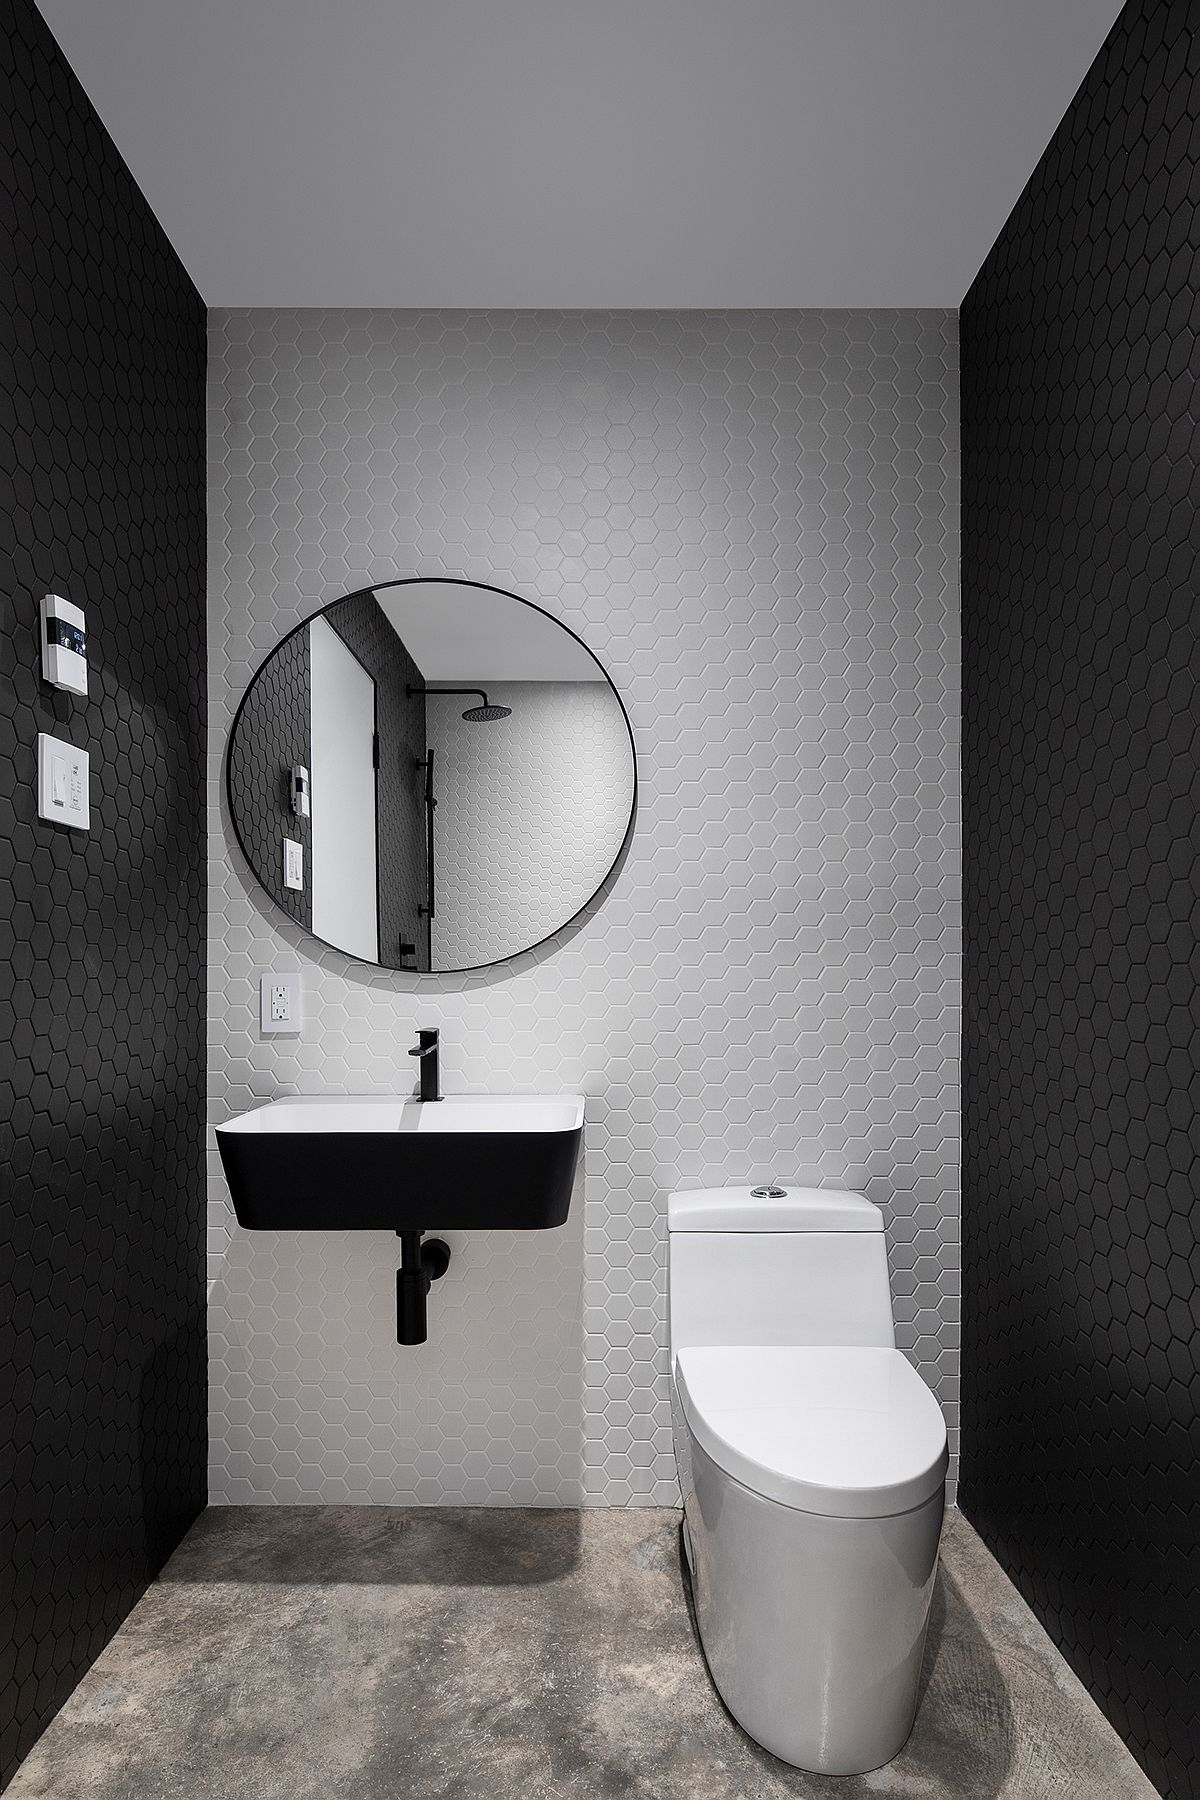 Phòng tắm sử dụng gạch họa tiết tổ ong đẹp mắt với hai gam màu trắng - đen cổ điển tạo chiều sâu cho không gian. Tấm gương tròn cùng bồn rửa gắn tường làm nên điểm nhấn cho bức tường màu trắng.